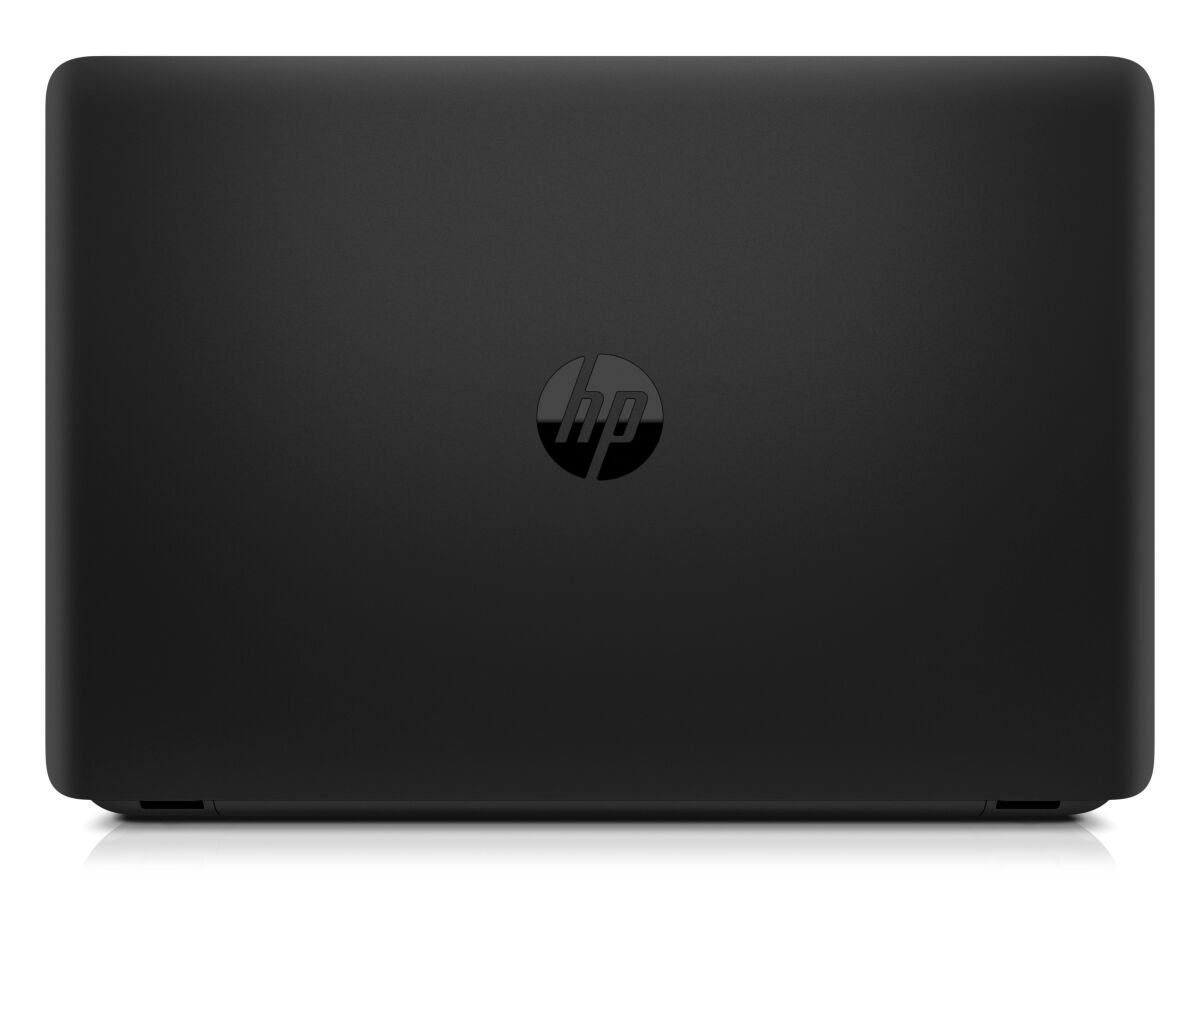 HP ProBook 455 G1 - H6E41EA laptop specifications